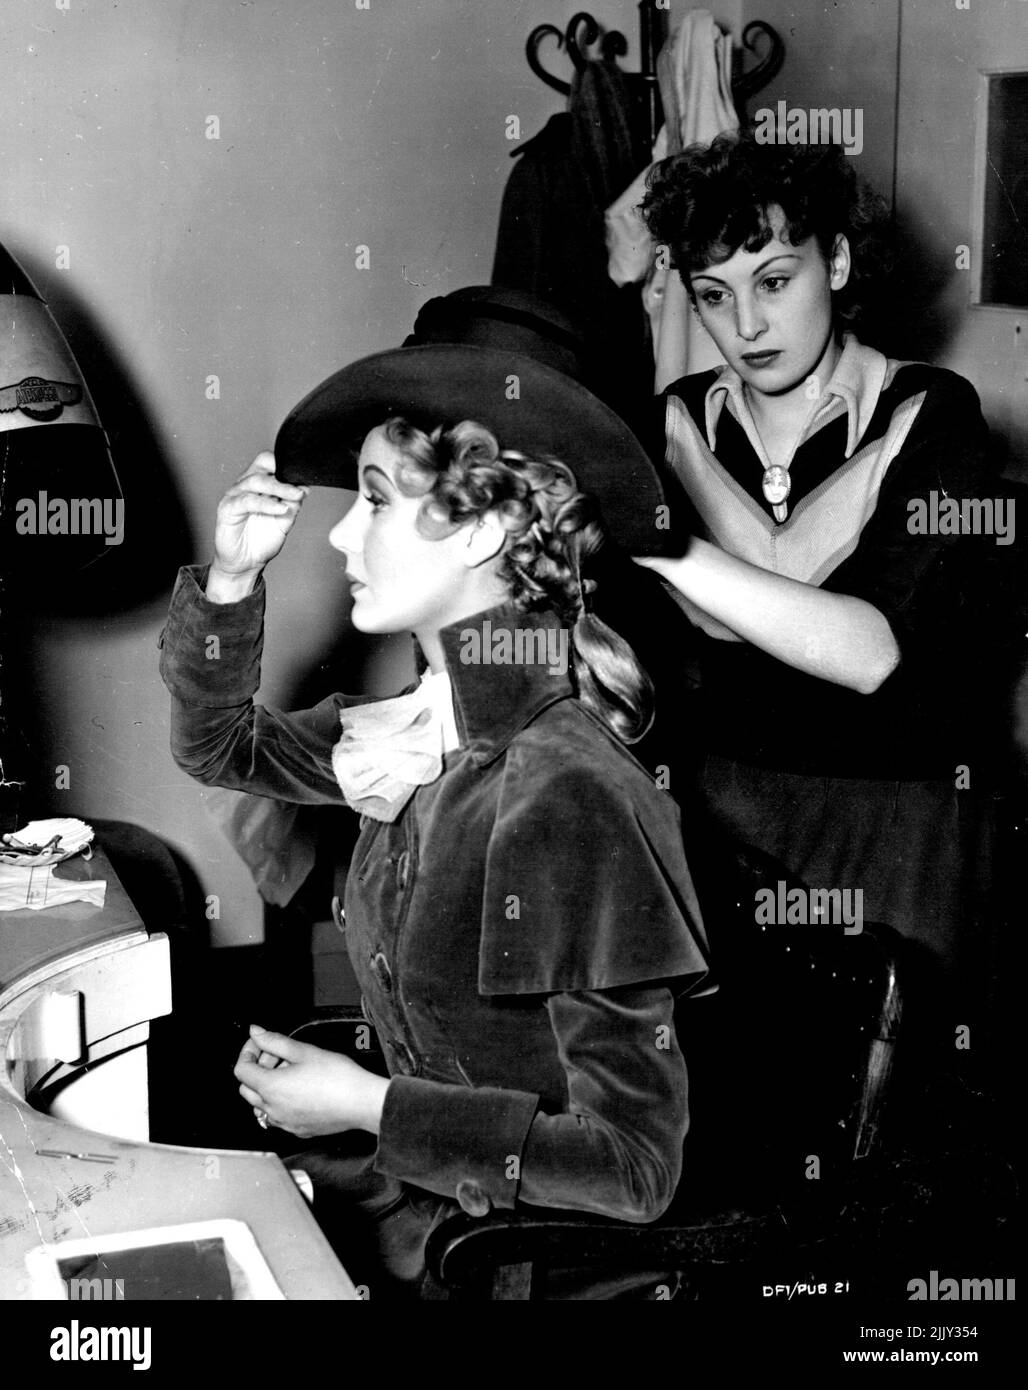 Margaret Leighton, die in The Exclusive Pimpernel Lady Blakeney gegenüber von David Nivens Sir Percy spielt, lässt ihr Haar von der Stylistin Betty Cross anpassen. Fräulein Leighton's Haare wurden roséblond getönt. 4. Dezember 1949. (Foto von Richard Santouris). Stockfoto